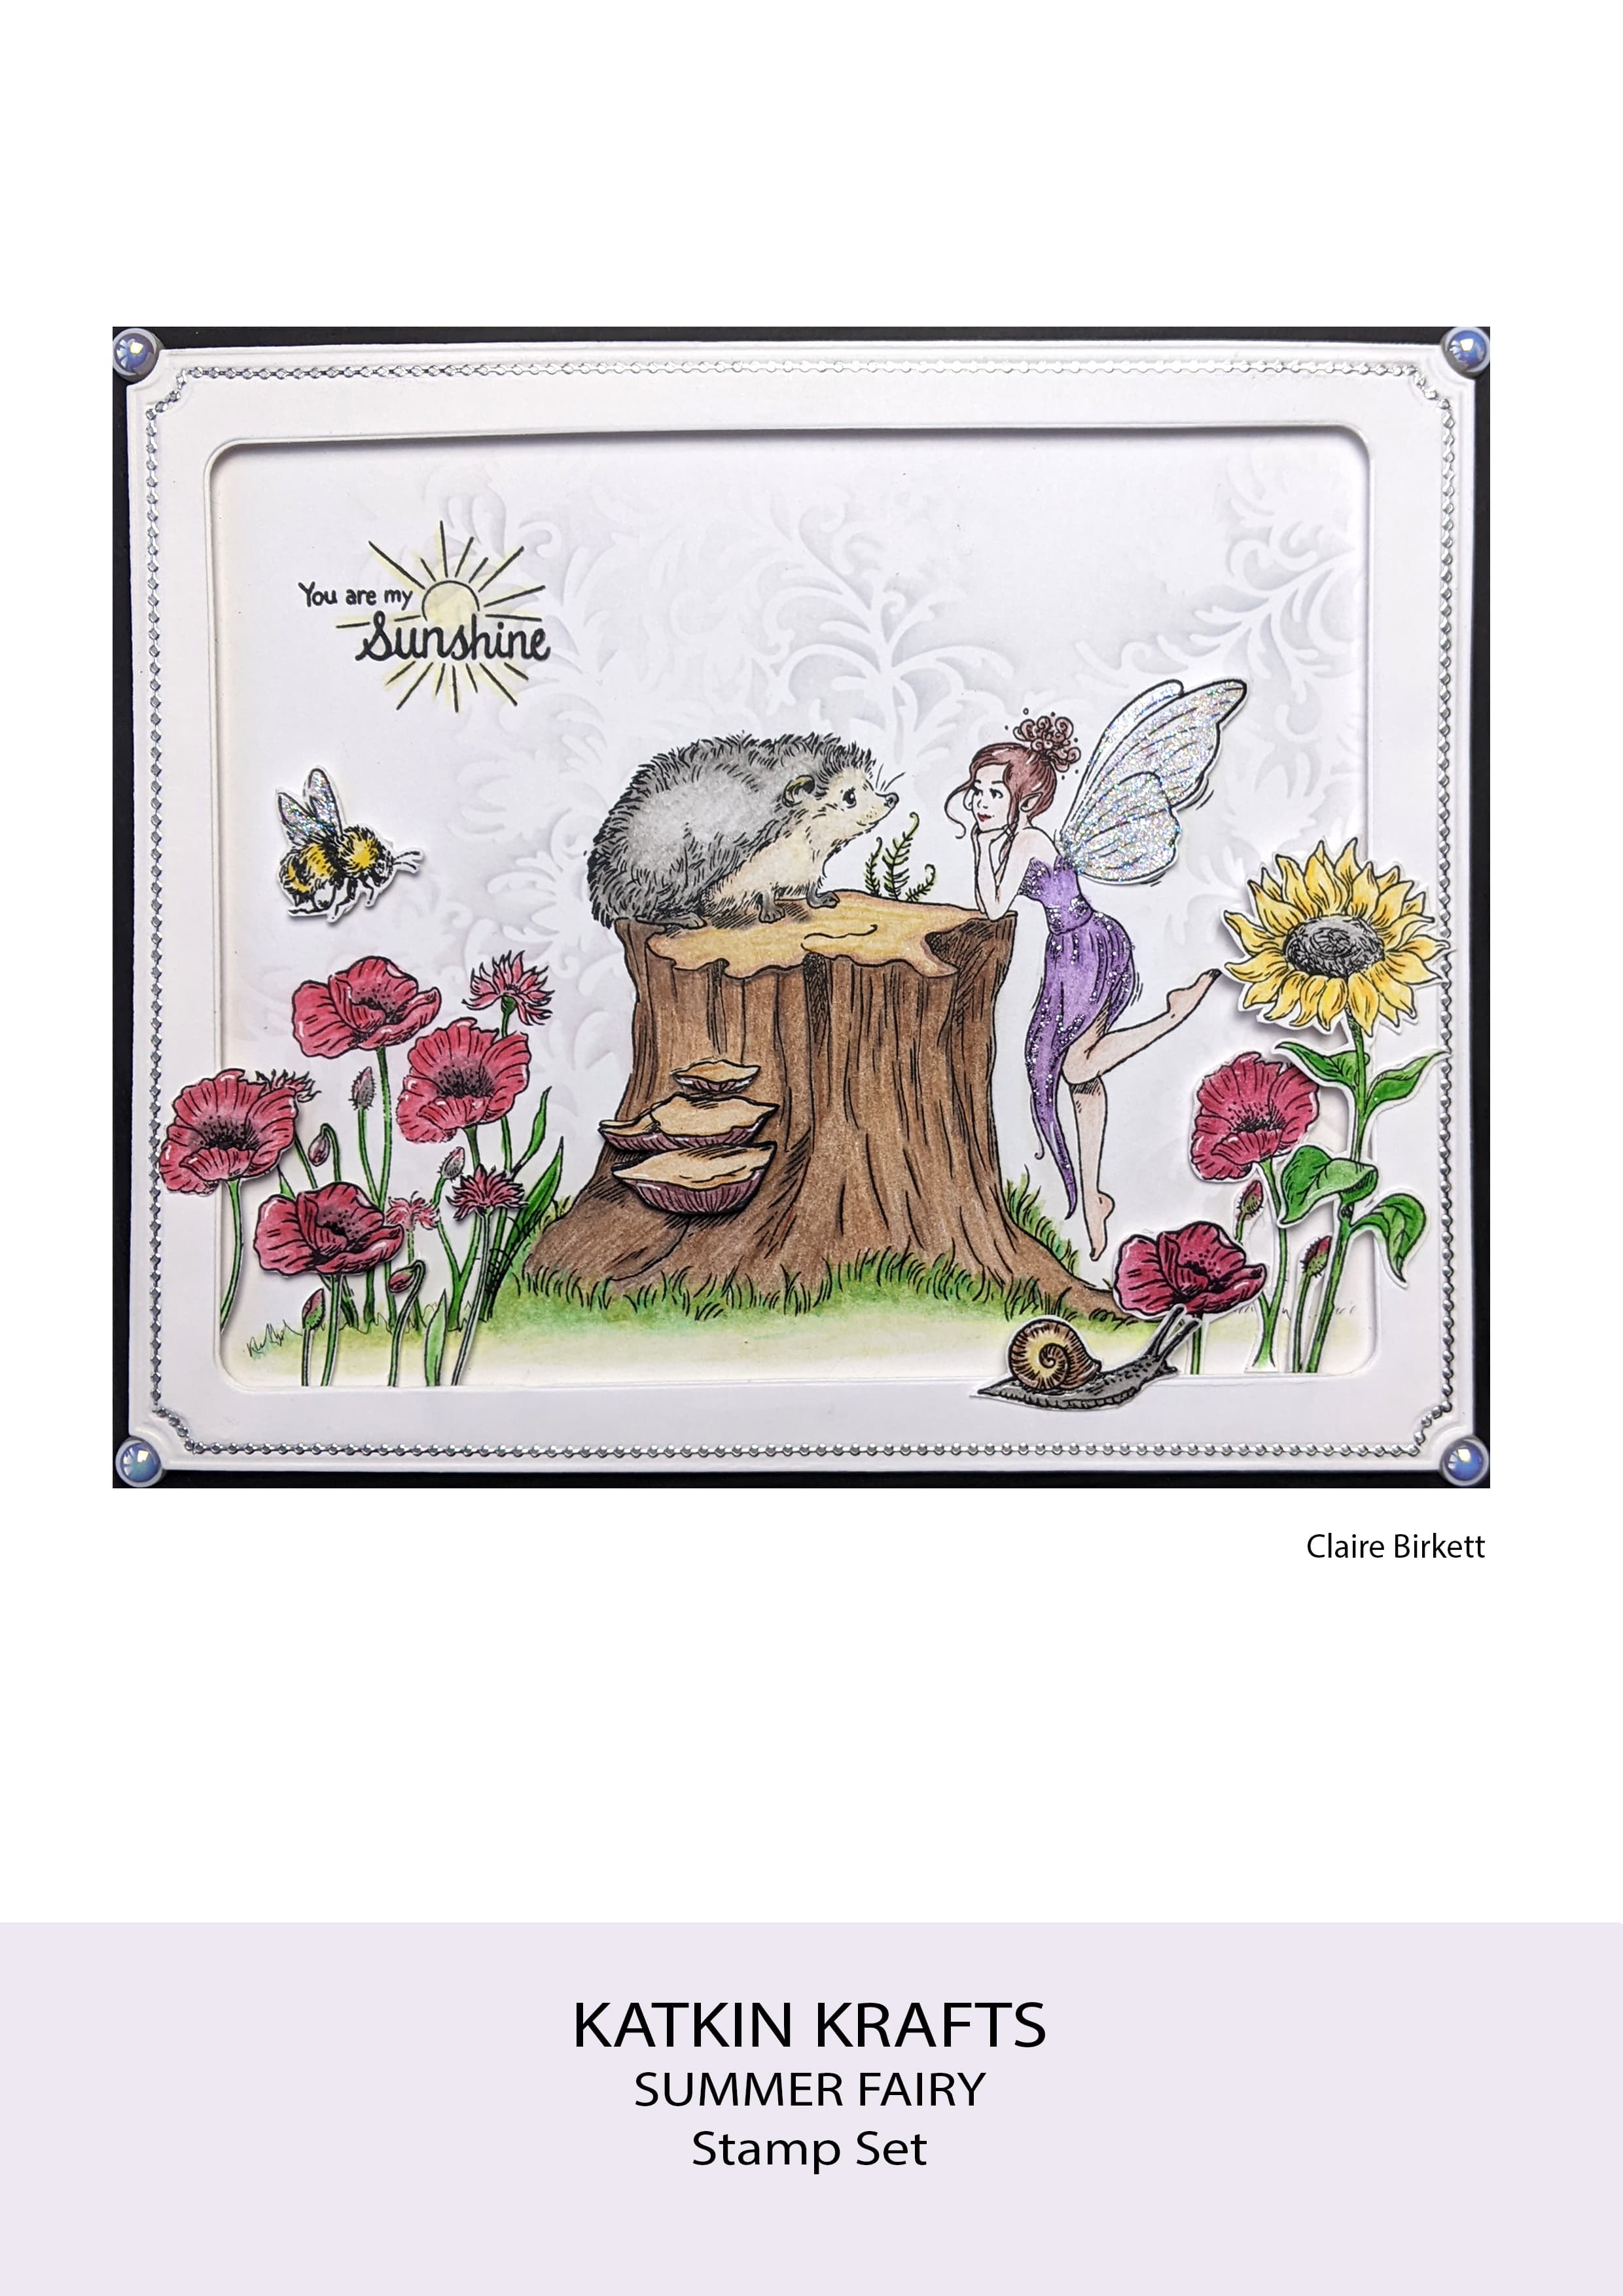 Katkin Krafts Summer Fairy 6 in x 8 in Clear Stamp Set